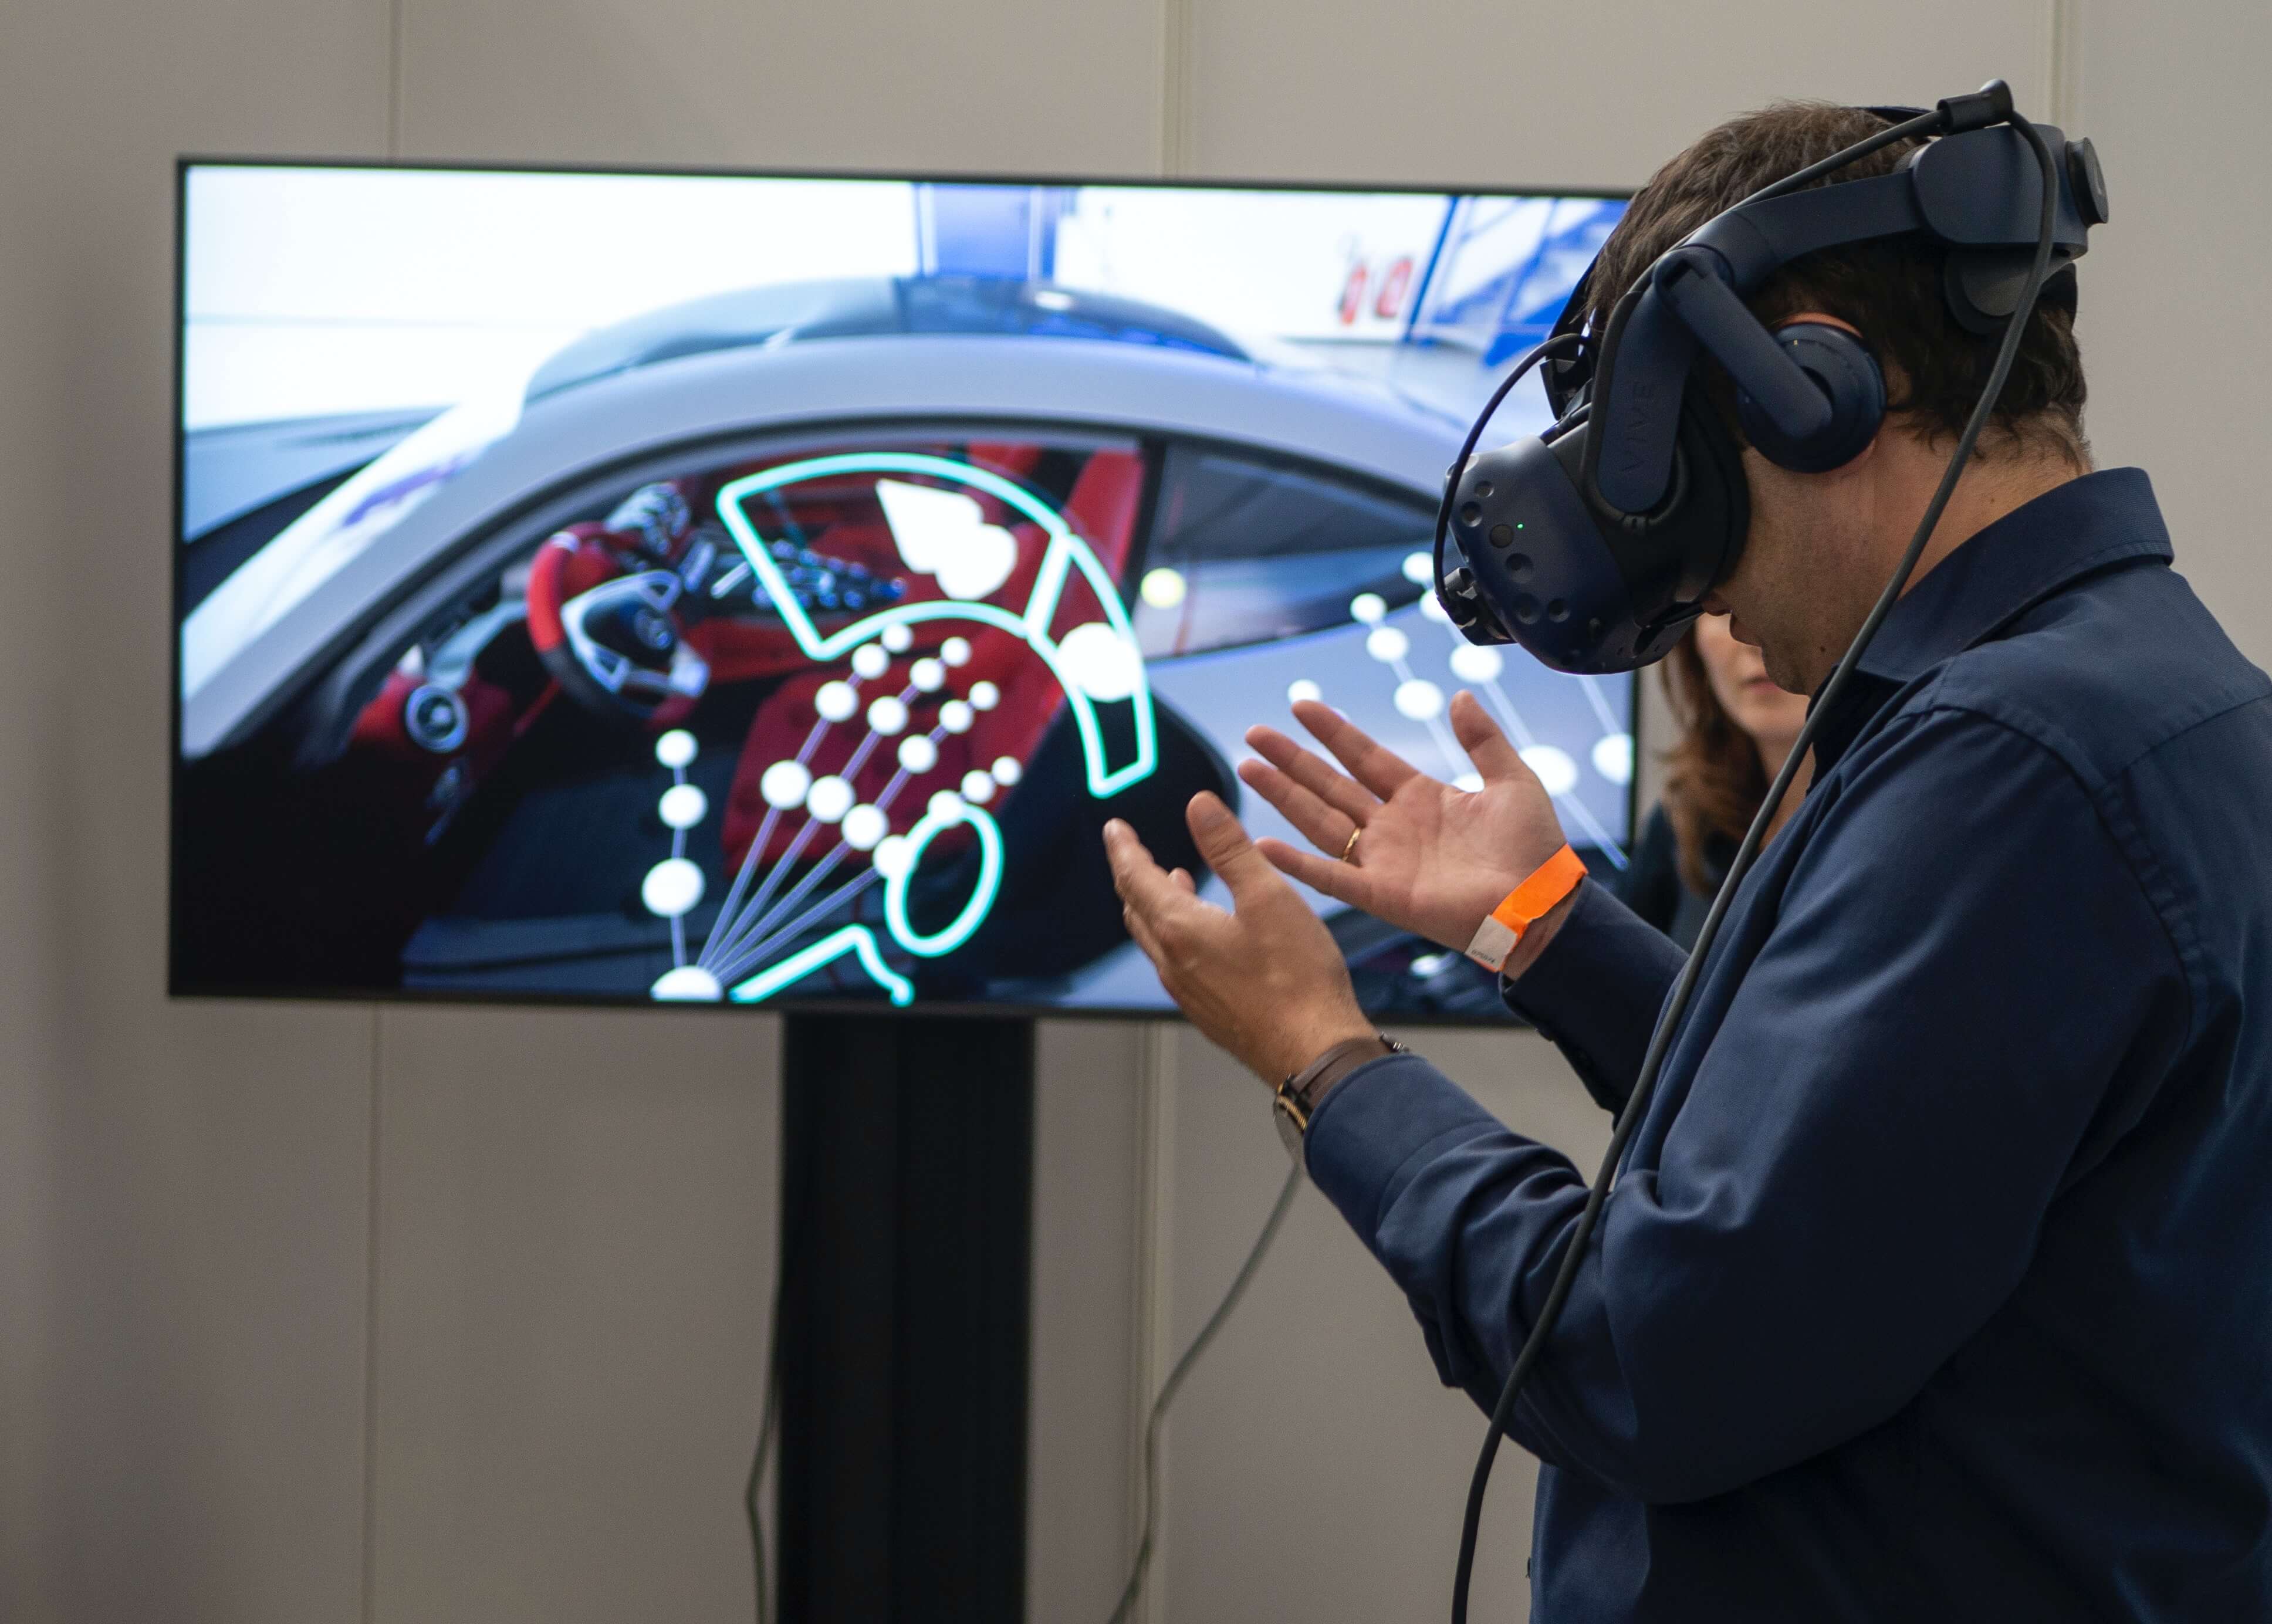 图片展示一名戴着虚拟现实头盔的人，正用手势与屏幕上的汽车内饰互动，屏幕显示了手势追踪的视觉效果。